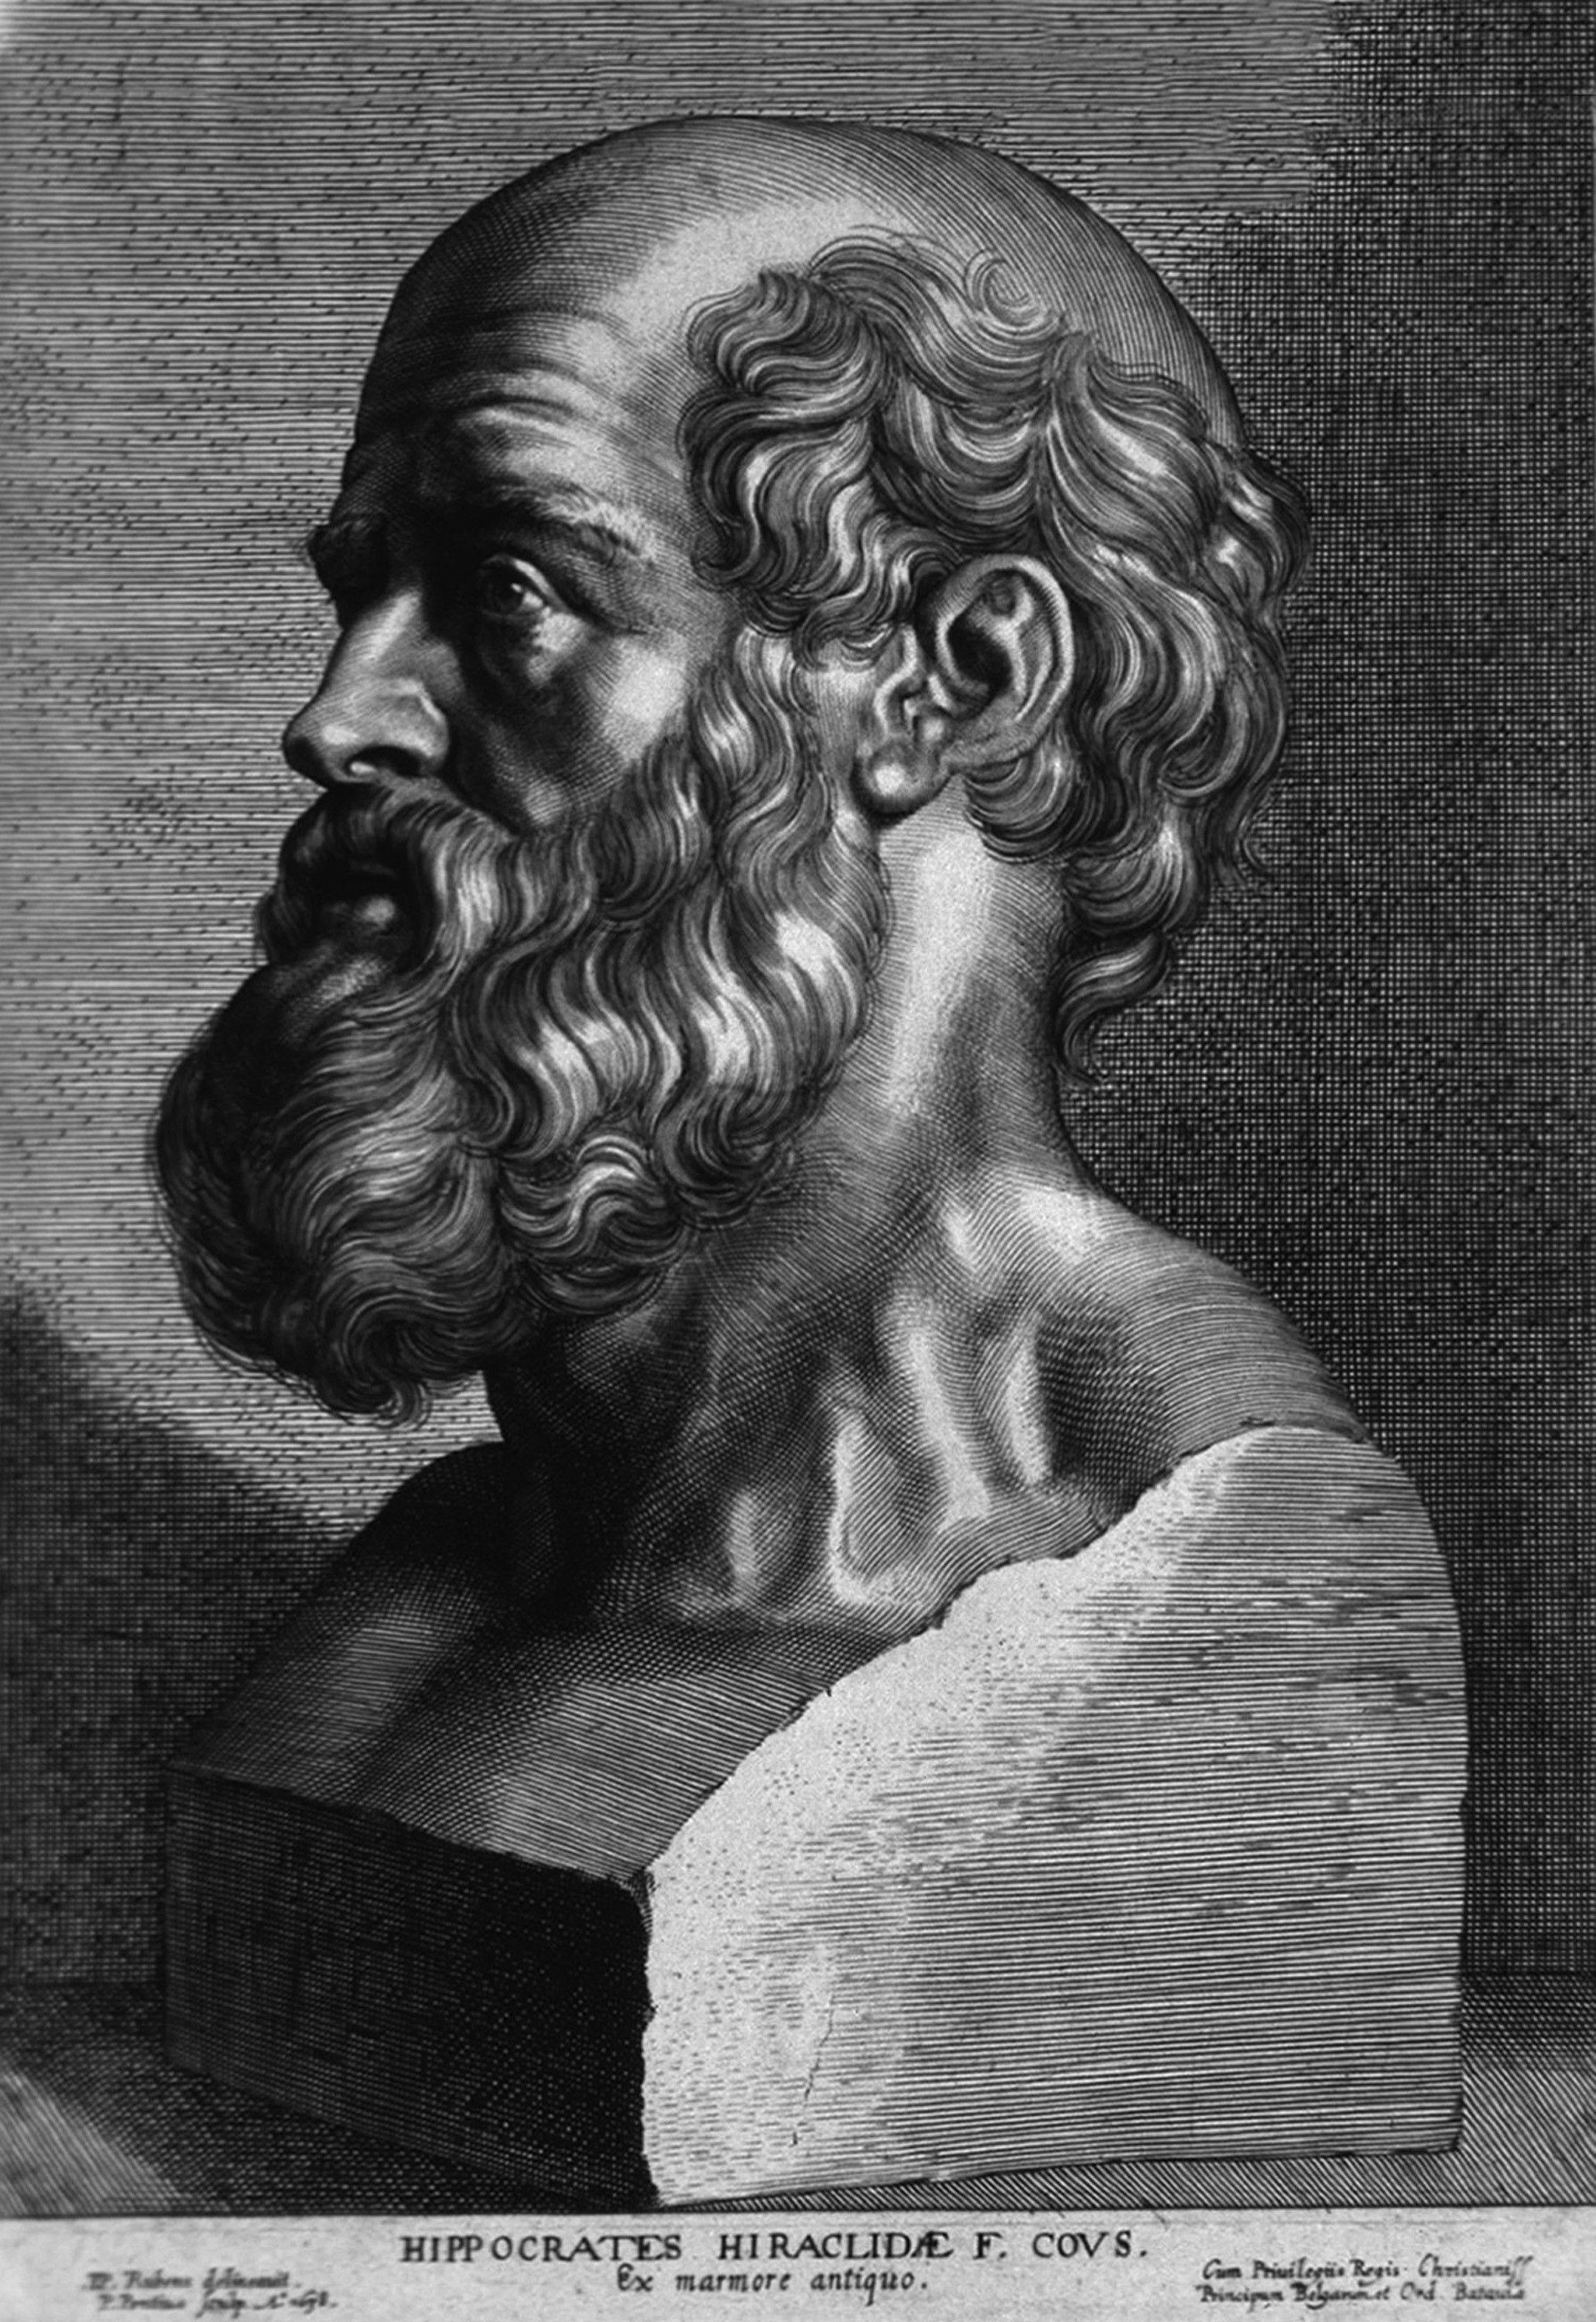 Biografia de Hipócrates, o Pai da Medicina - InfoEscola